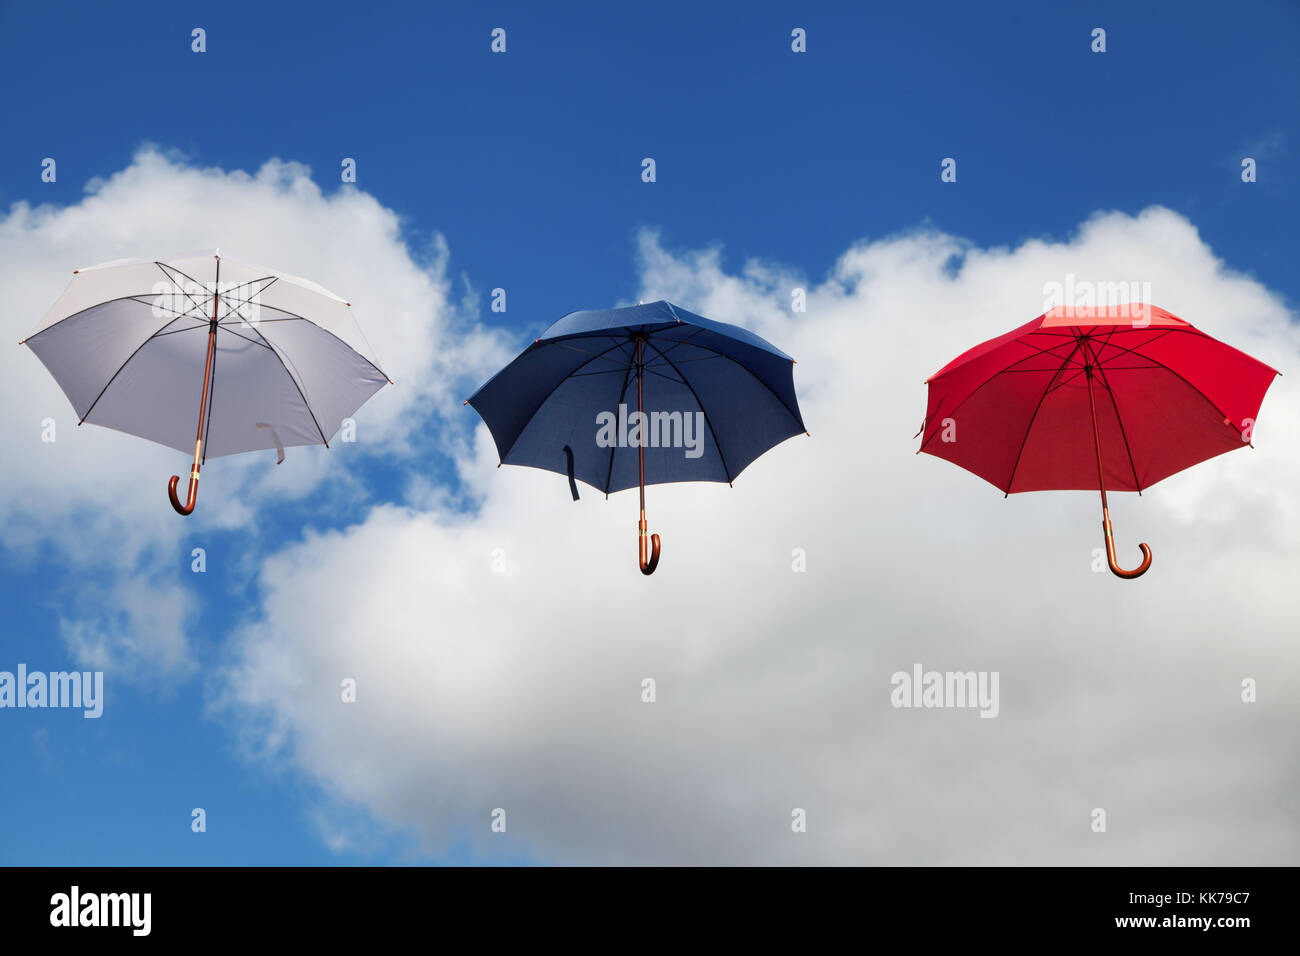 Trois Parapluies flottantes en blanc, bleu foncé et rouge Banque D'Images